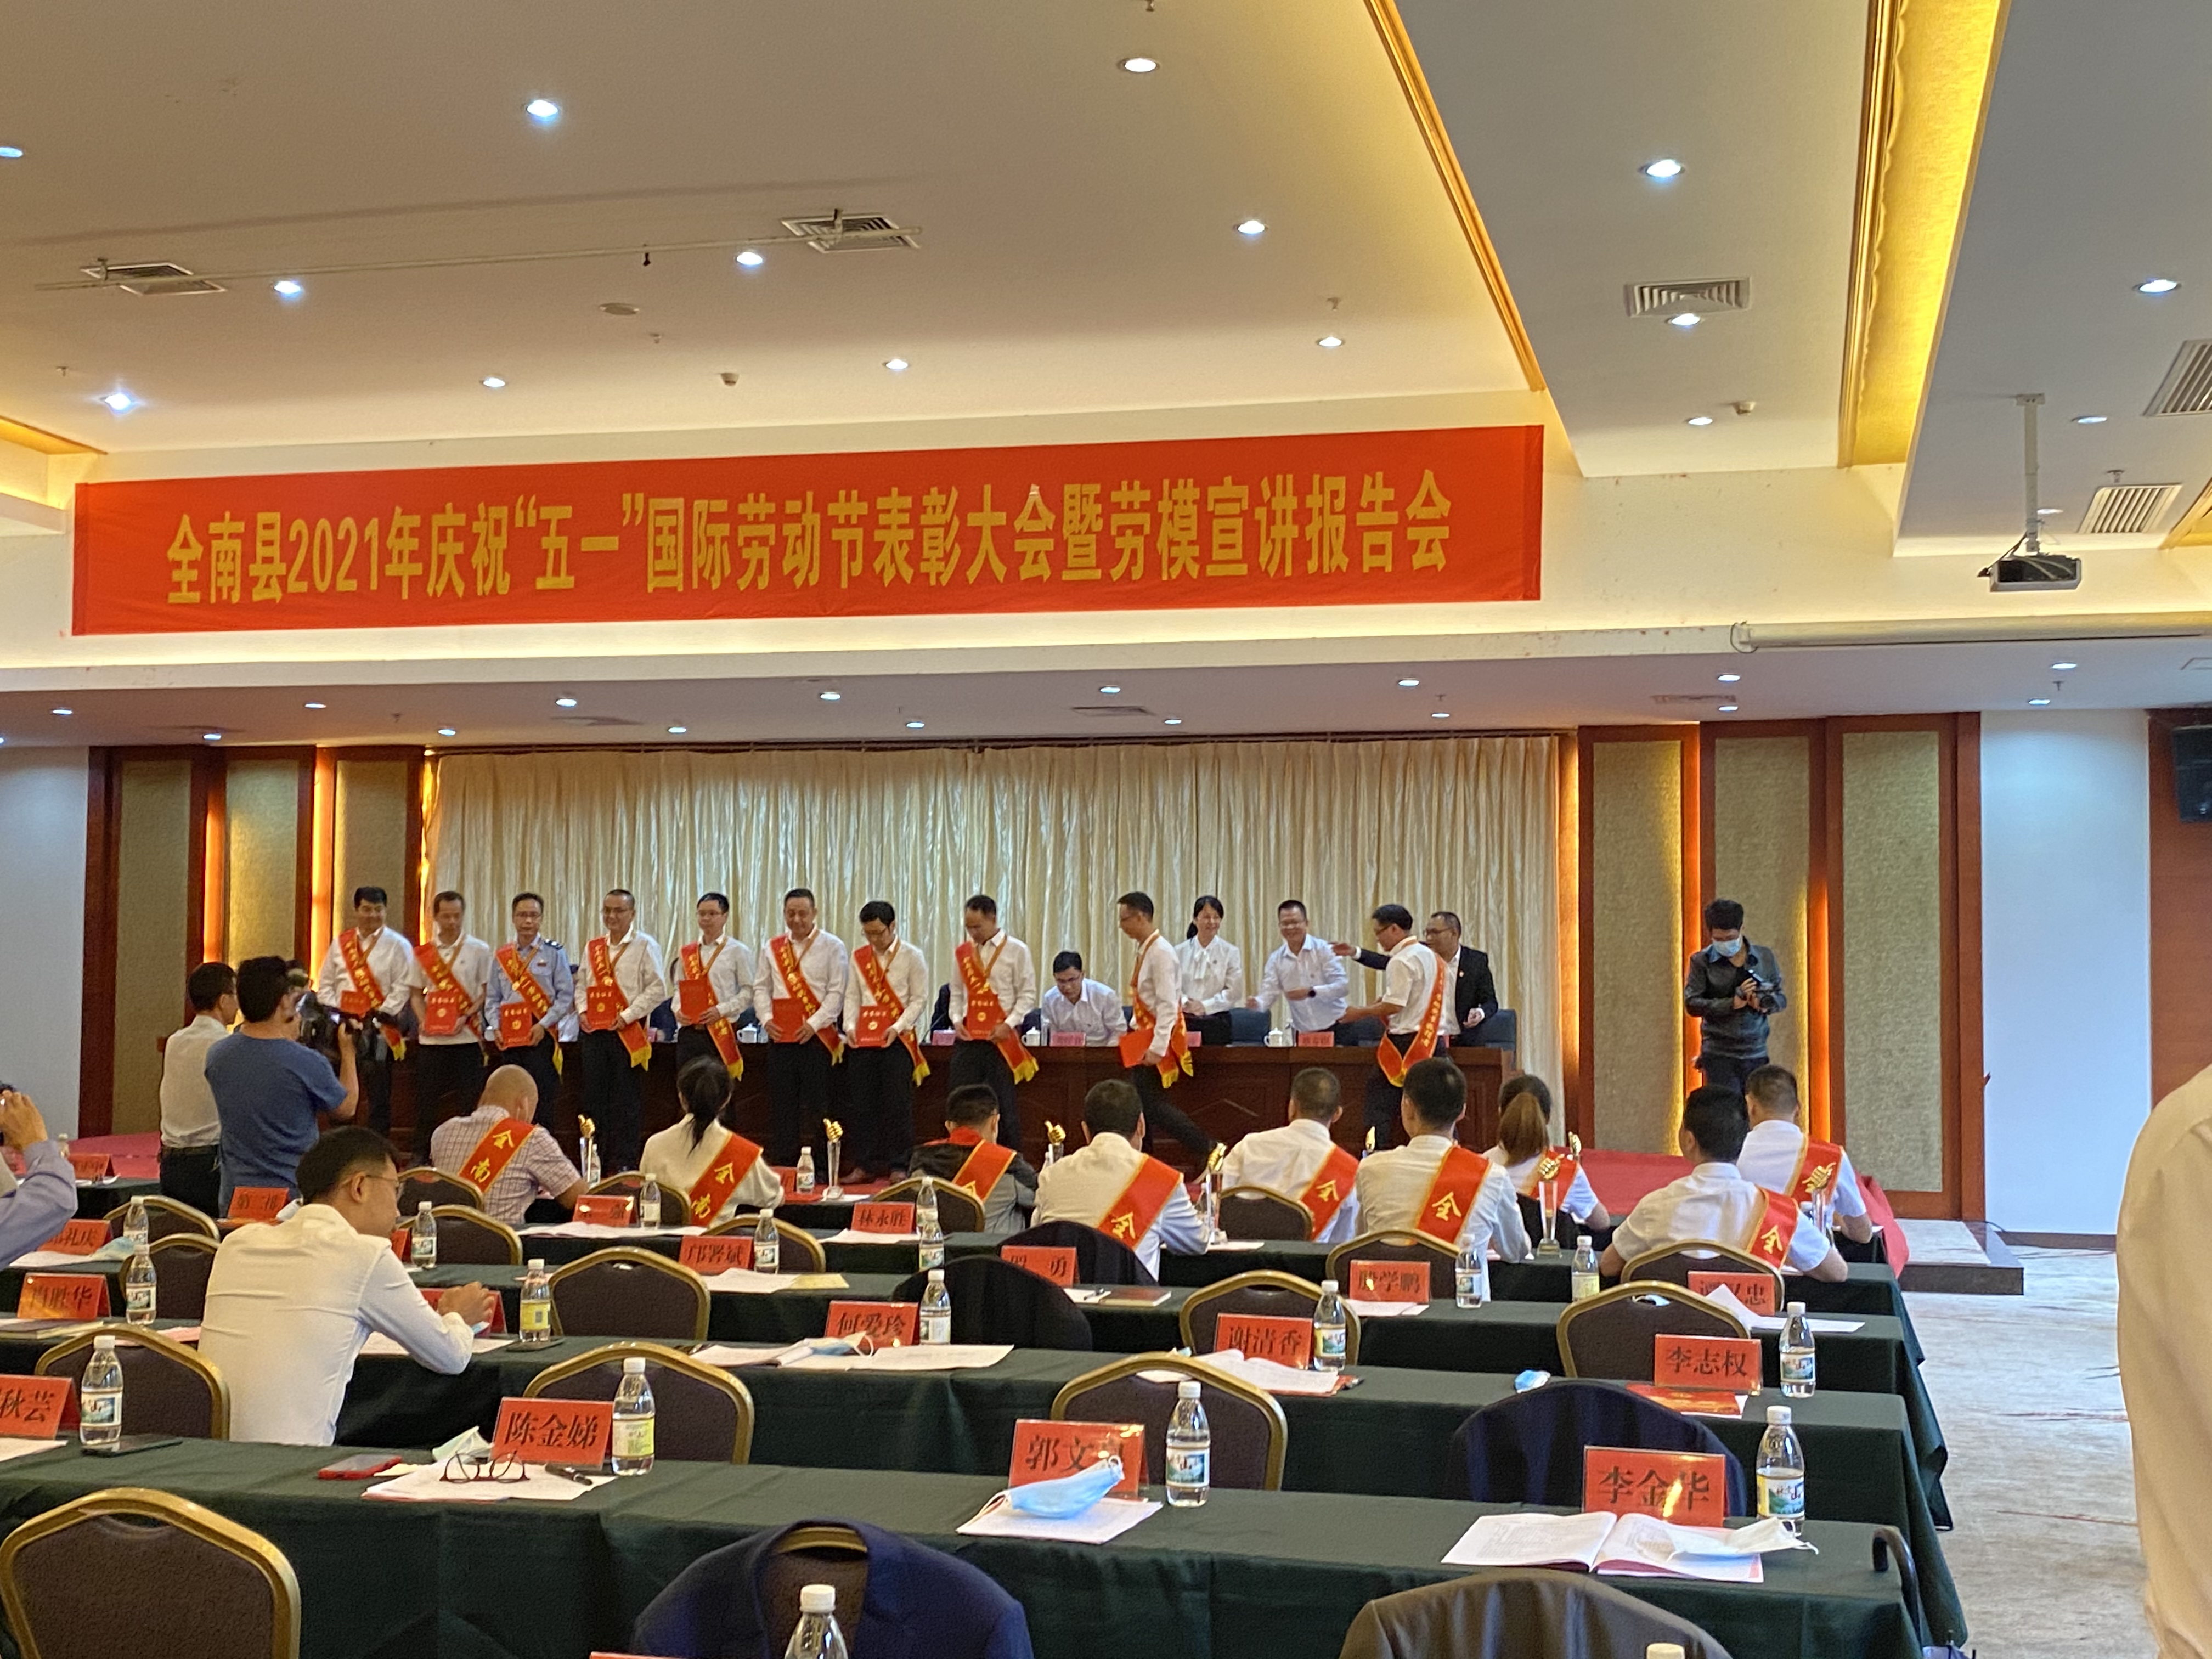 Zamestnanci spoločnosti Dengfeng vyhrali 1. mája pracovnú medailu v okrese Quannan v provincii Jiangxi